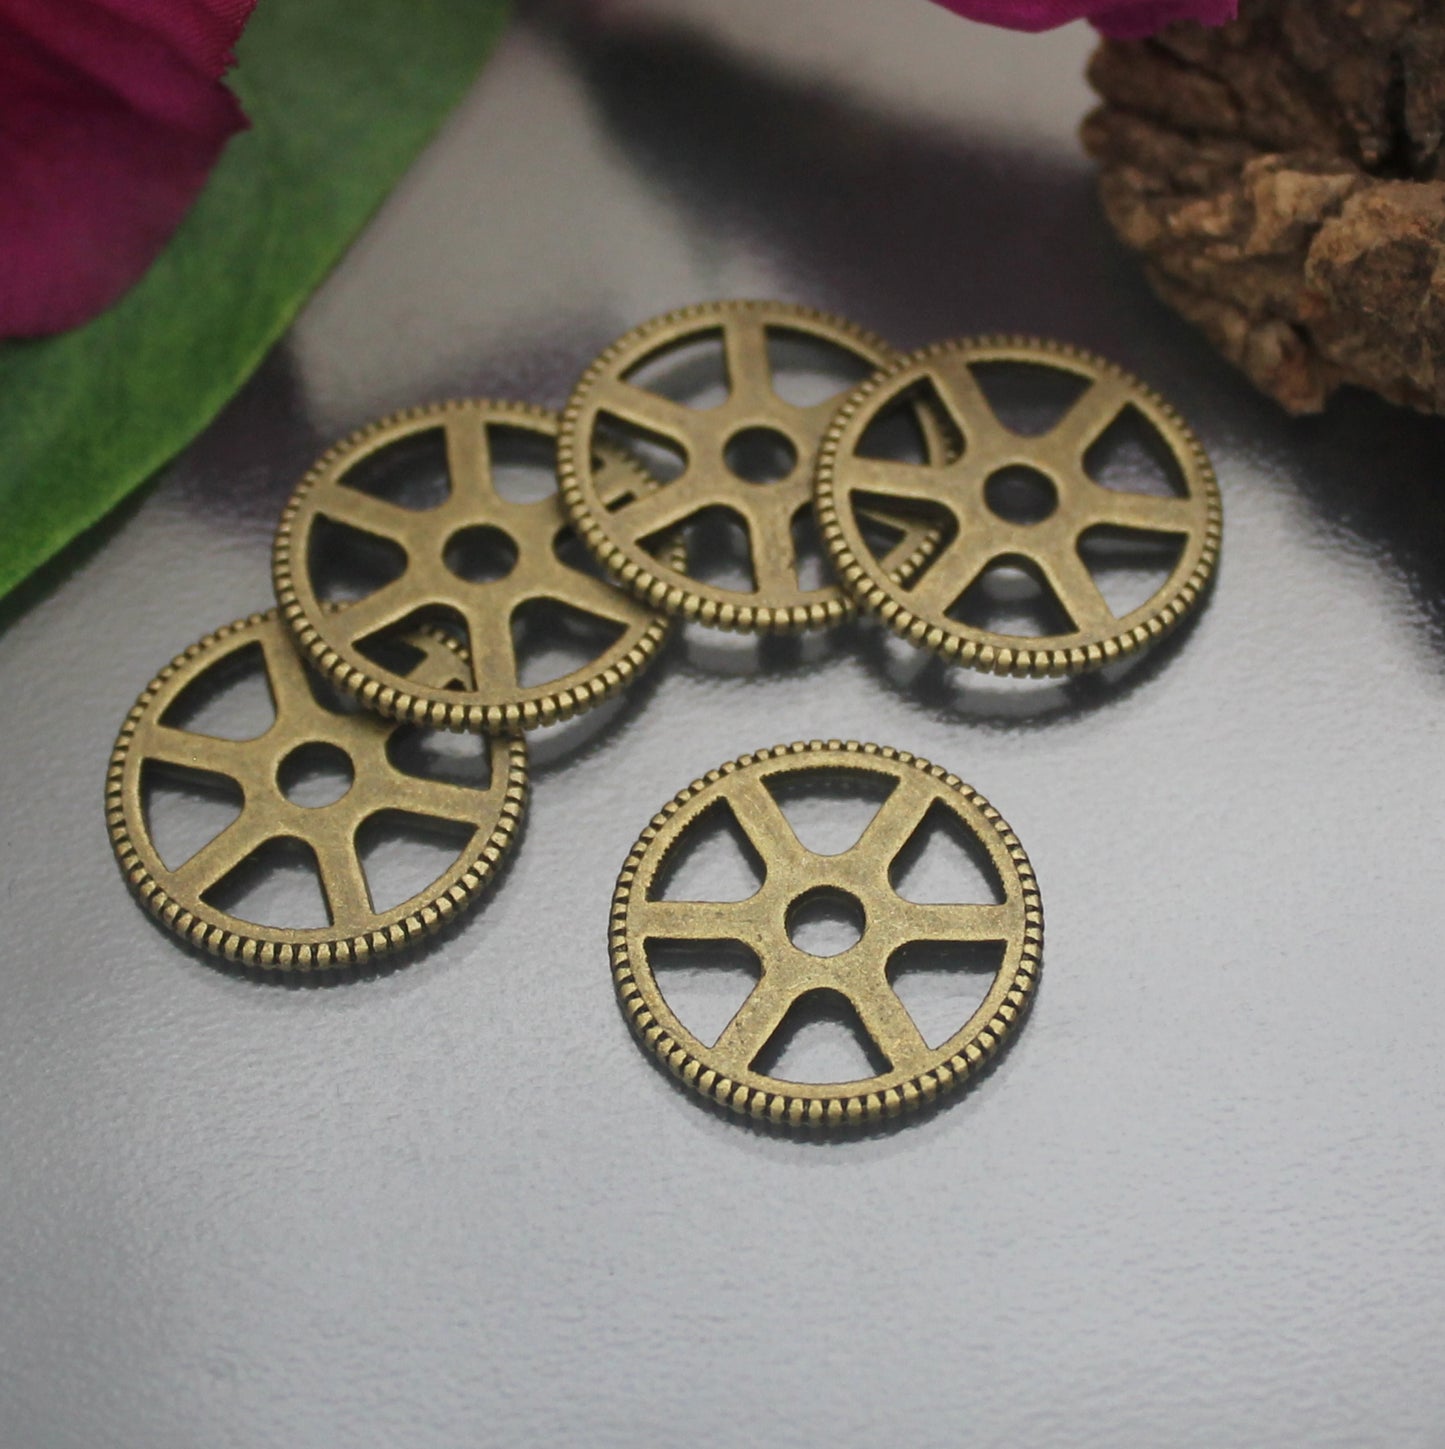 5 Zahnräder, Gearwheels, im Steampunk-Design, ø 20mm, ideal für die Schmuckfertigung